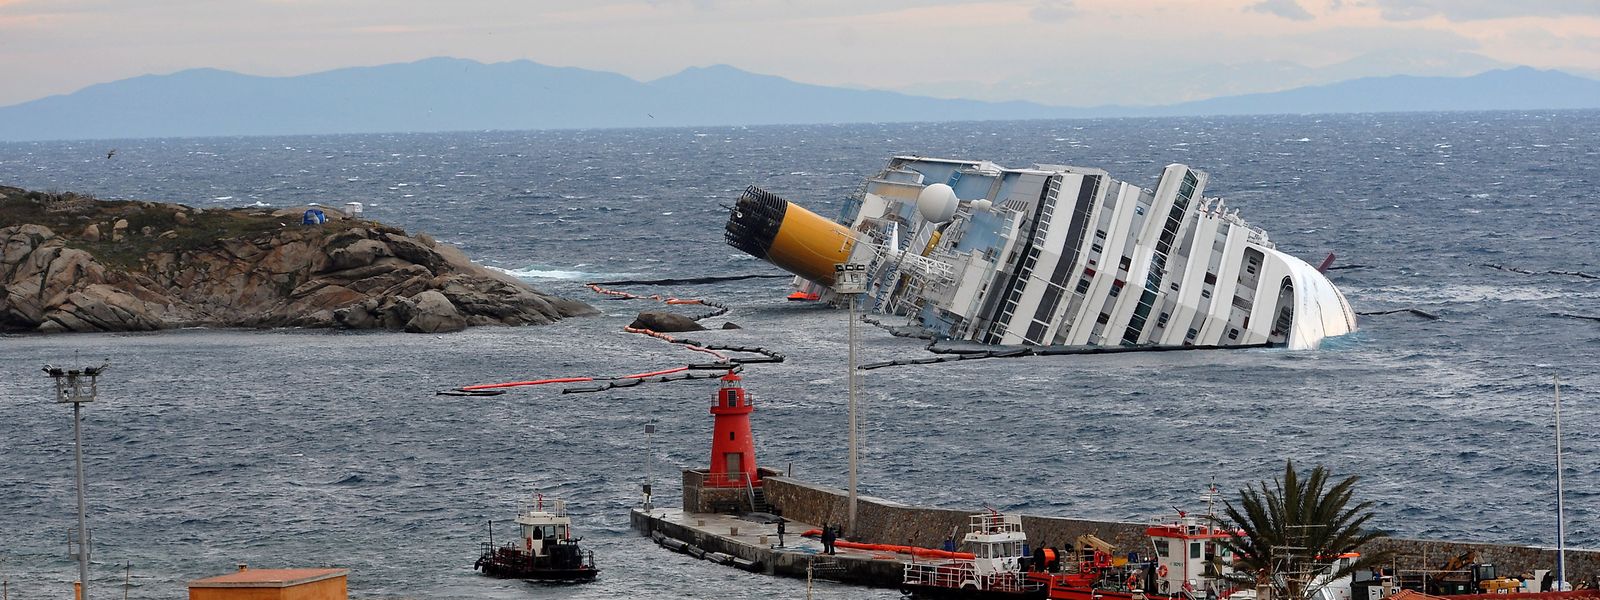 Nachdem die "Costa Concordia" am 13. Januar 2012 einen Felsen vor der italienischen Insel Giglio gerammt hatte, wurde das aufgelaufene Wrack zu einer Touristenattraktion.